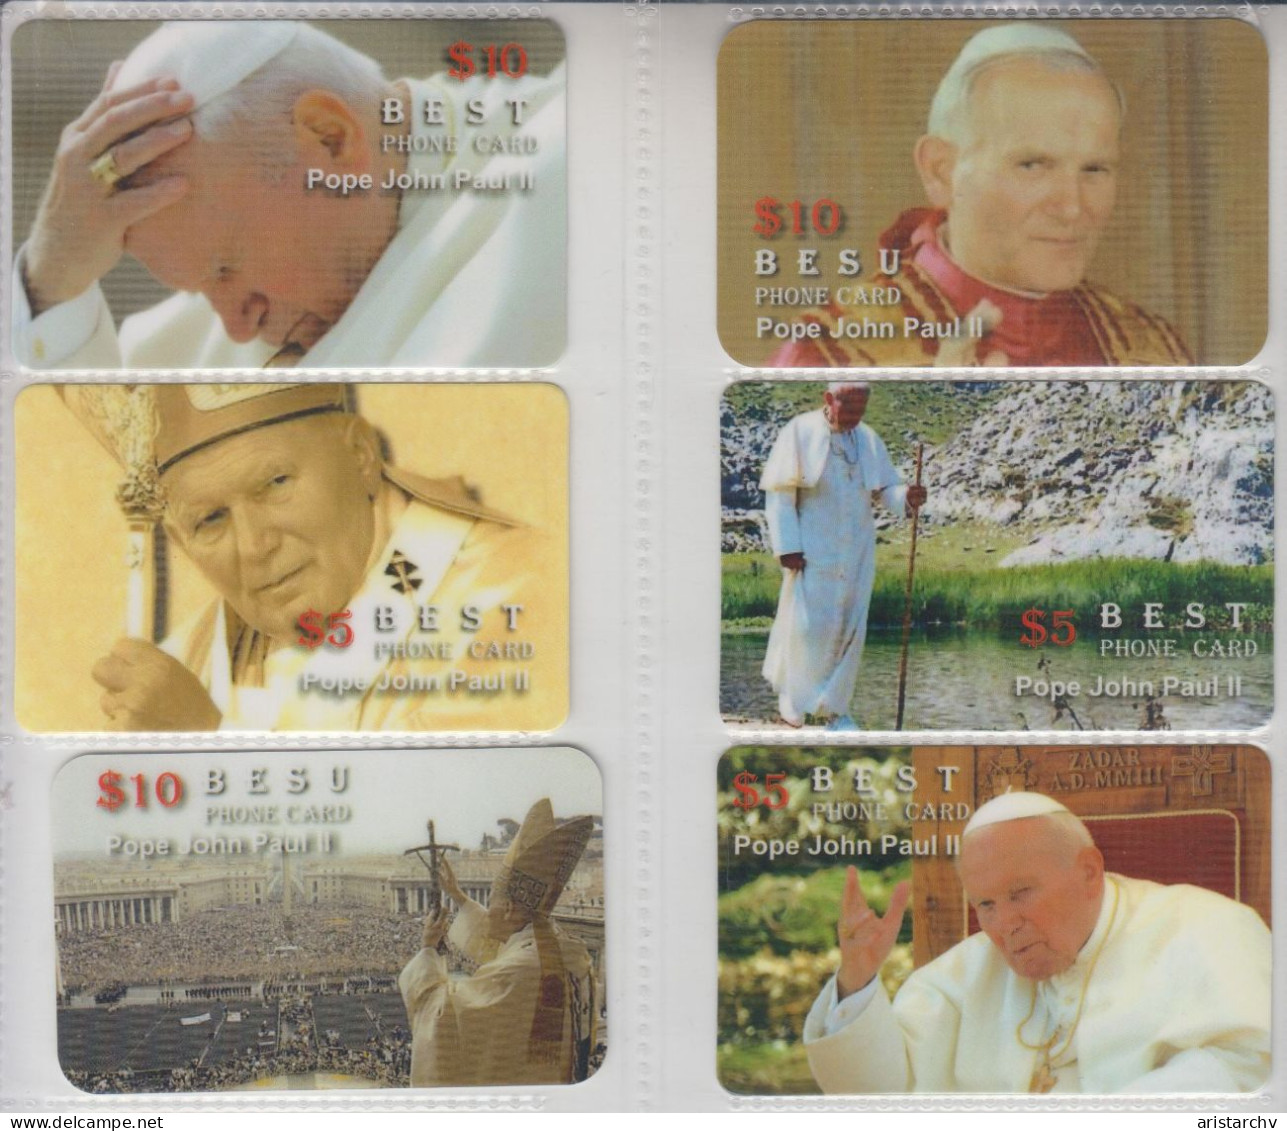 ISRAEL POPE JOHN PAUL II BENEDICT XVI 46 CARDS - Israel